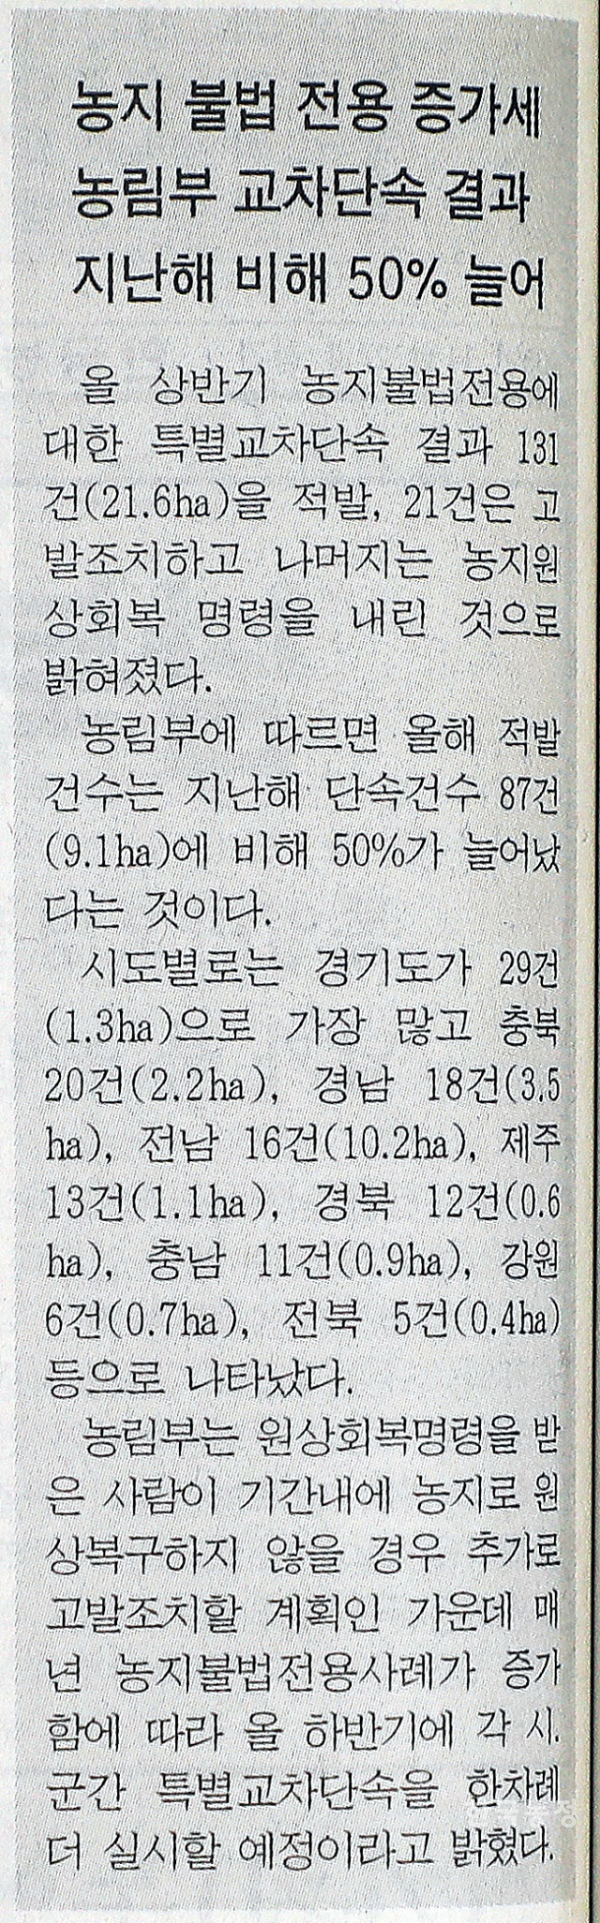 6월 14일에 발행된 제25호 신문에선 농지 불법 전용이 늘어나고 있는 소식을 전하고 있다. 한승호 기자